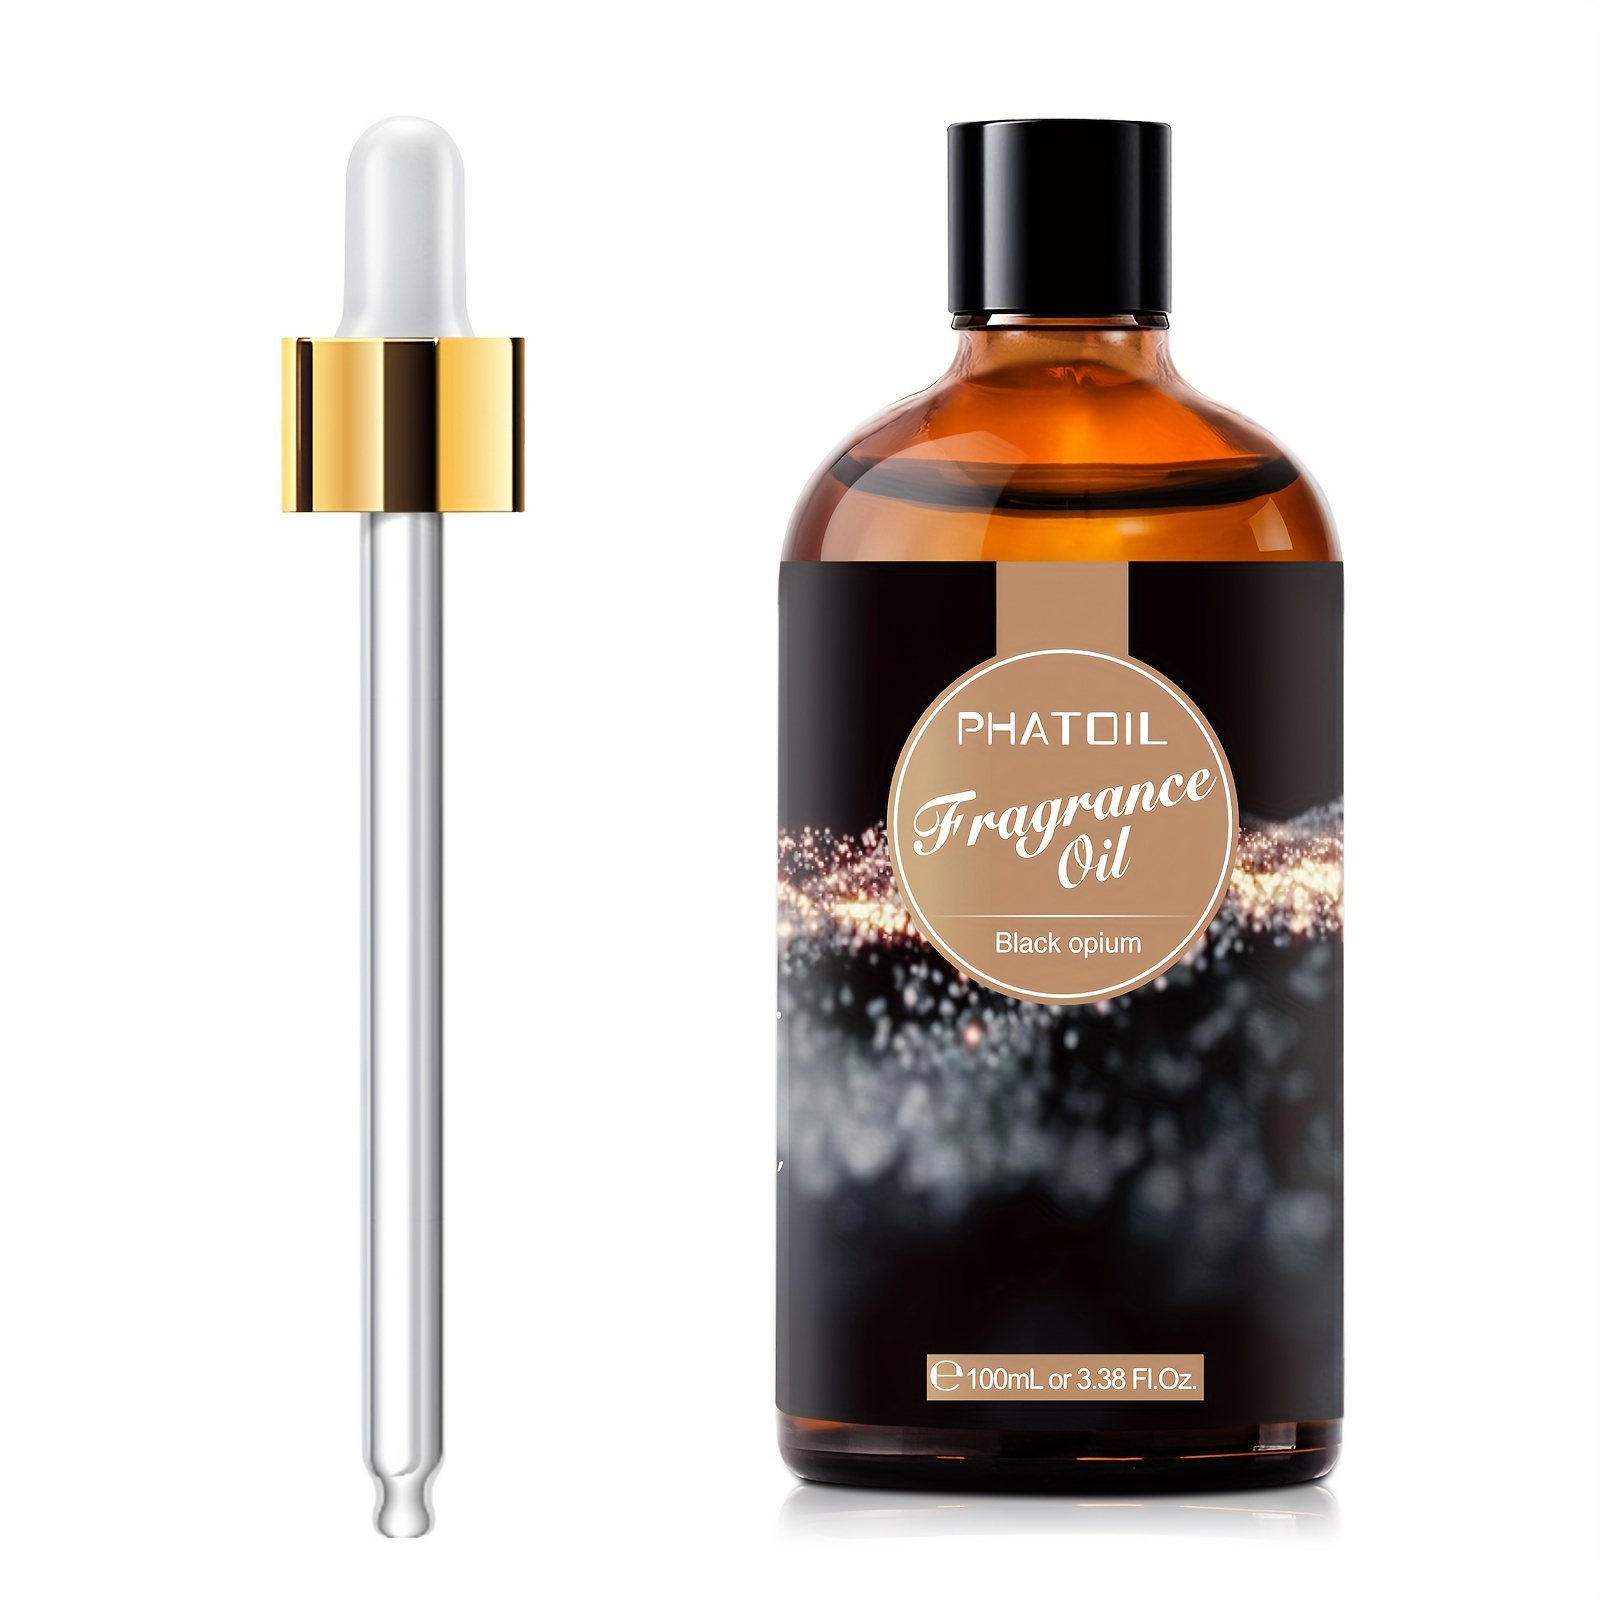 1pc PHATOIL Black Opium Fragrance Oils 100ml/3.38Fl.Oz, High Quality Diffuser Oils For Oil Burner, Air Freshener